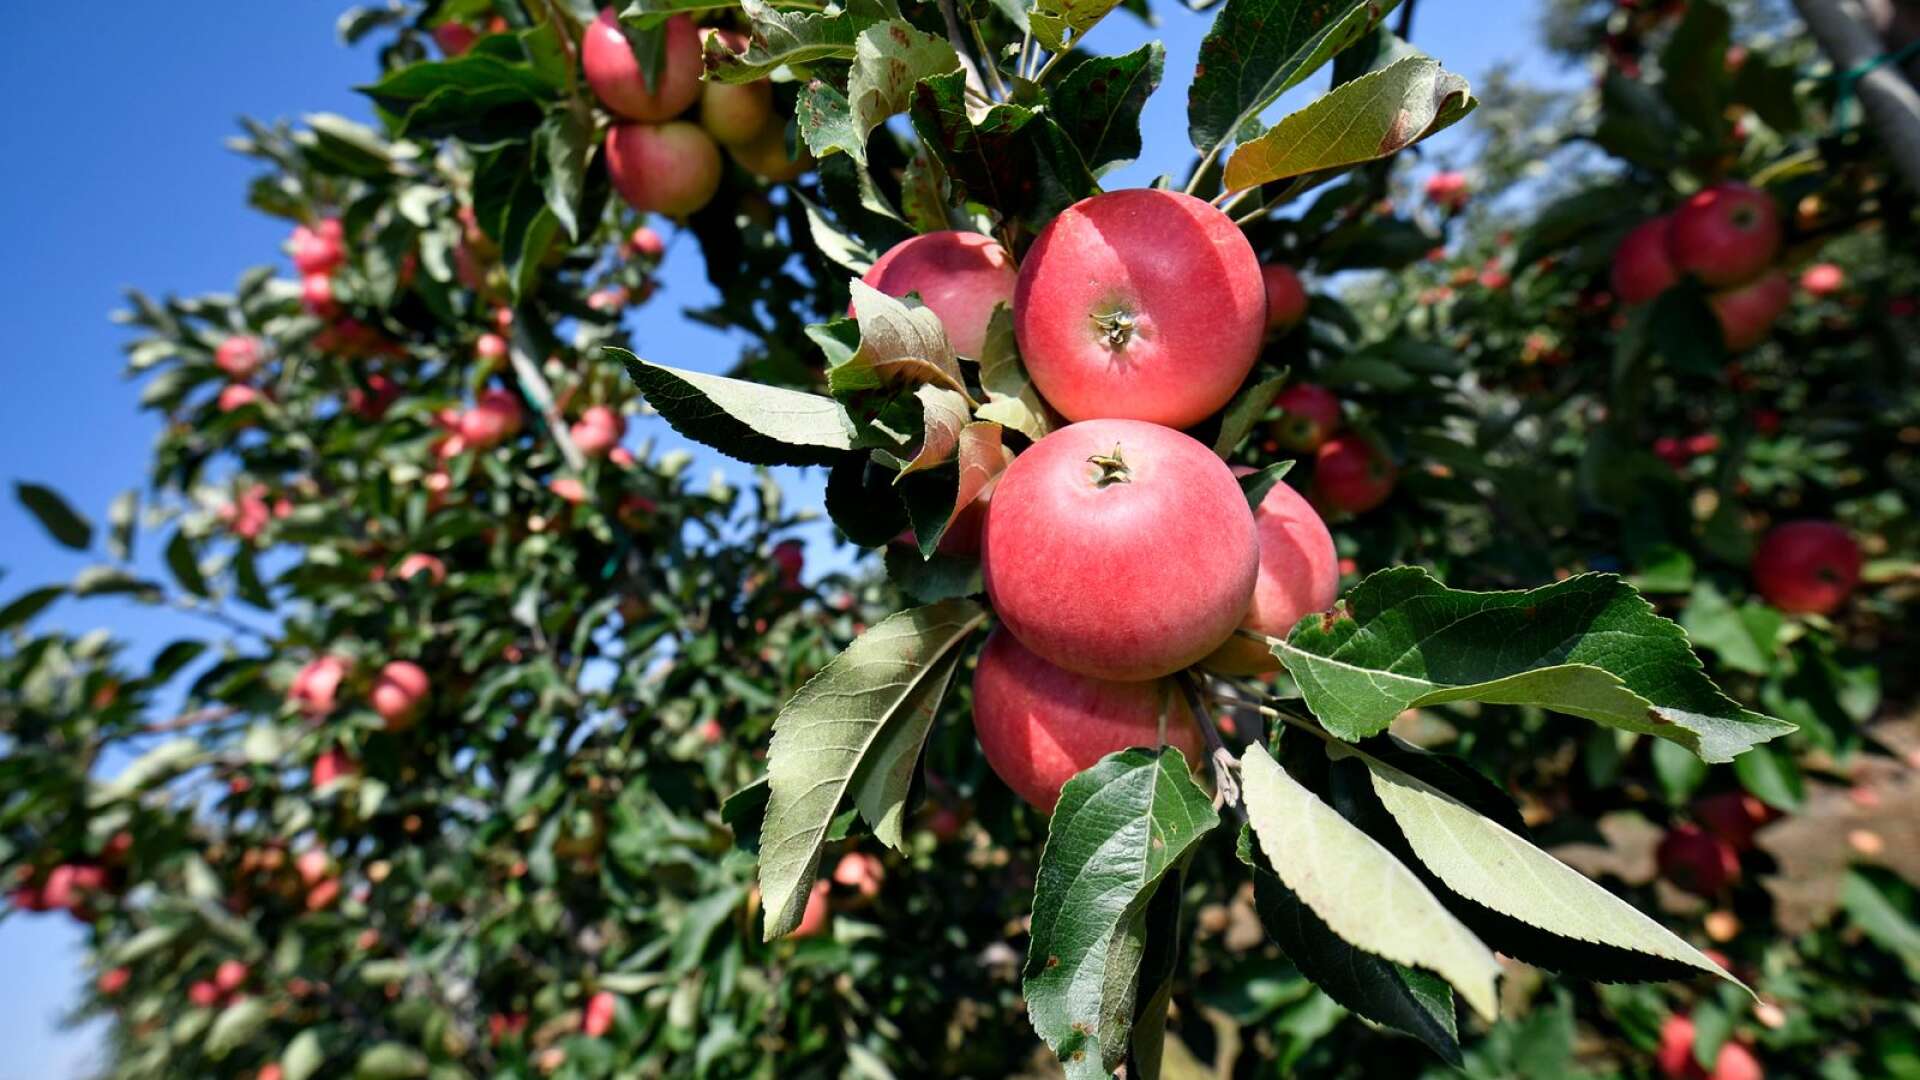 Efter tre dagar är alla lättplockade äpplen plockade och man ska ta sig an de svårplockade, men märker då att man inte har den stege som behövs för att plocka dem, skriver Marcus Eriksson.